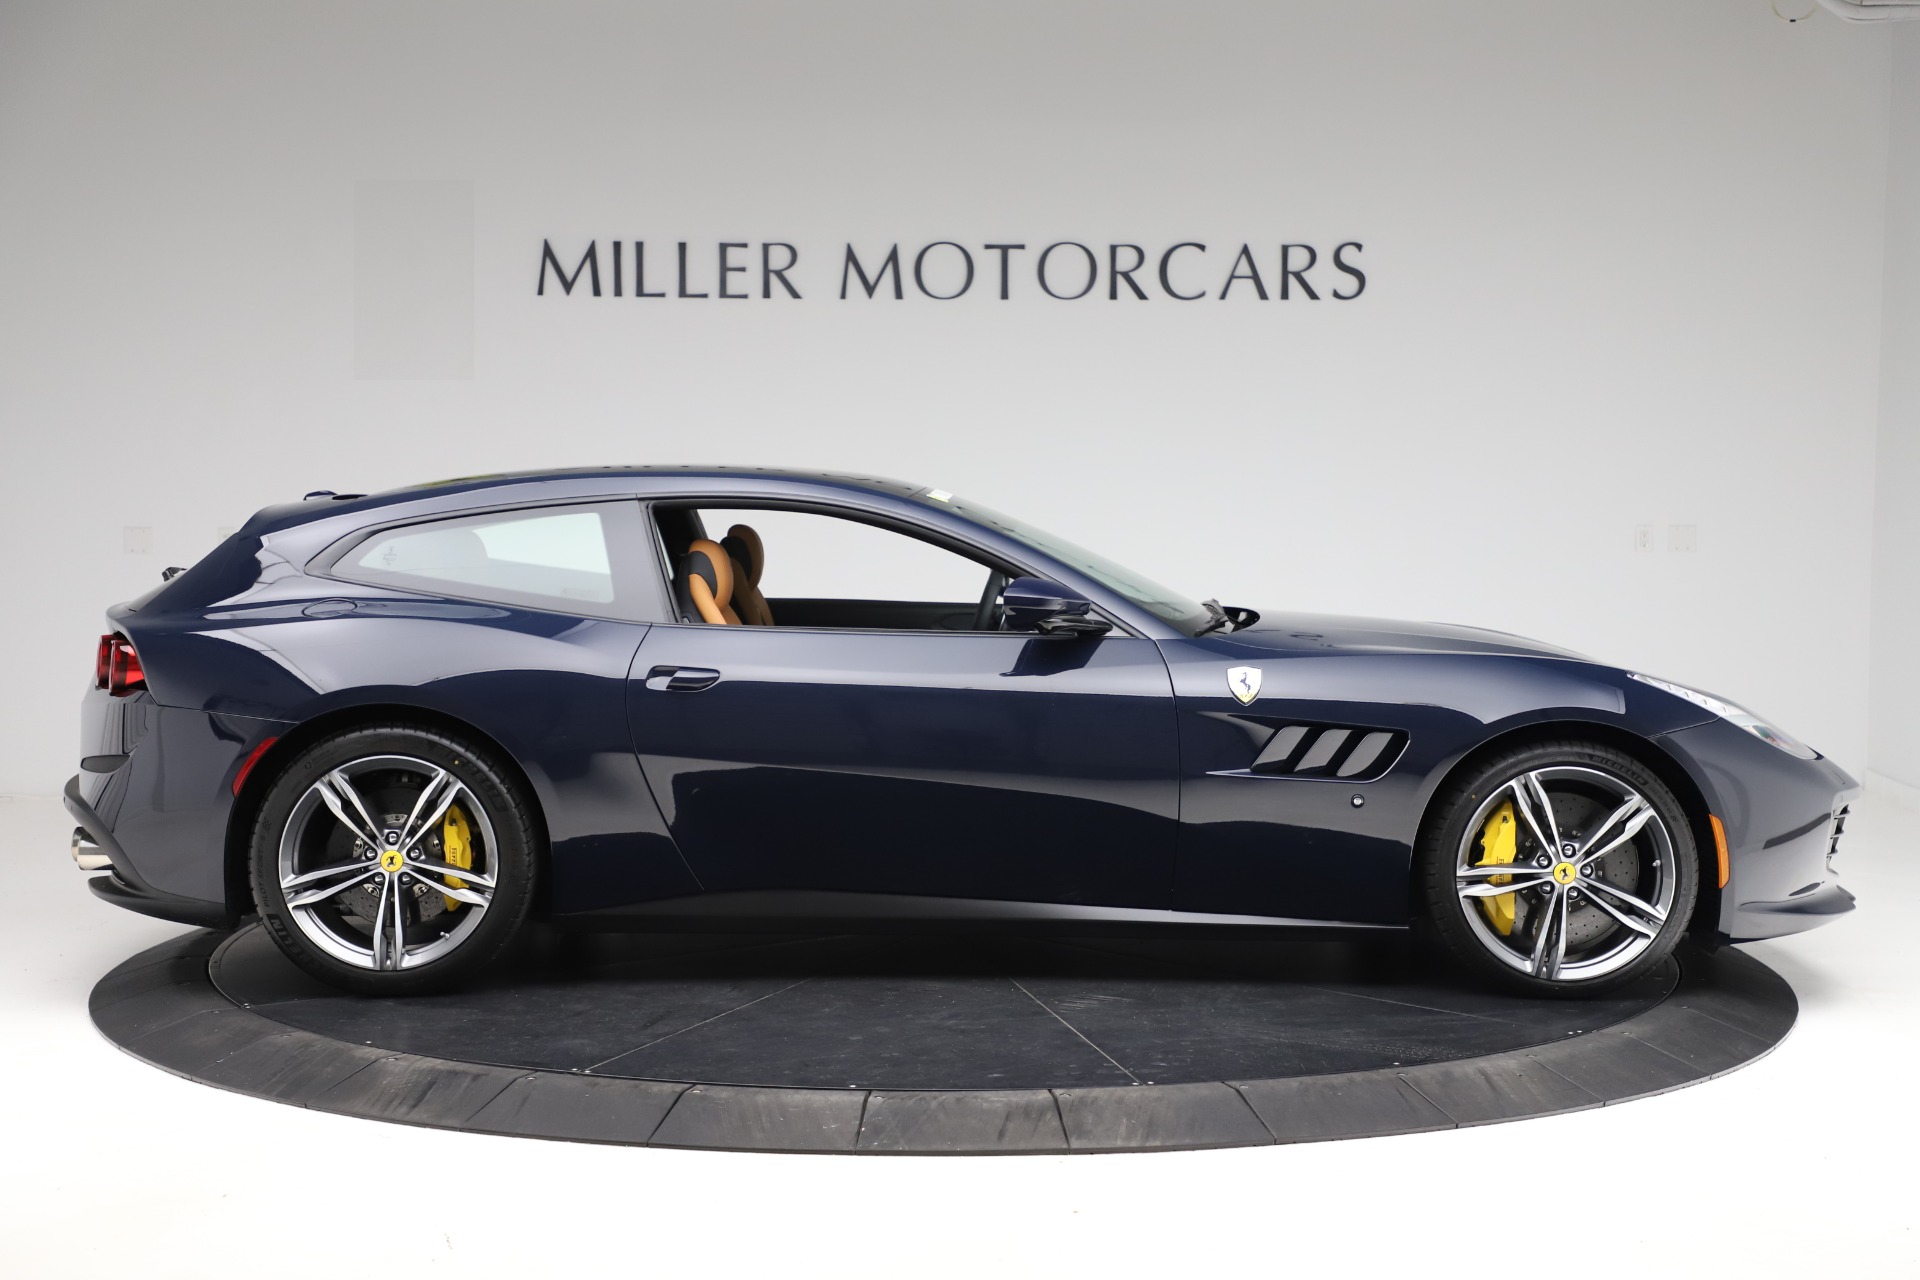 PreOwned 2020 Ferrari GTC4Lusso For Sale () Miller Motorcars Stock 